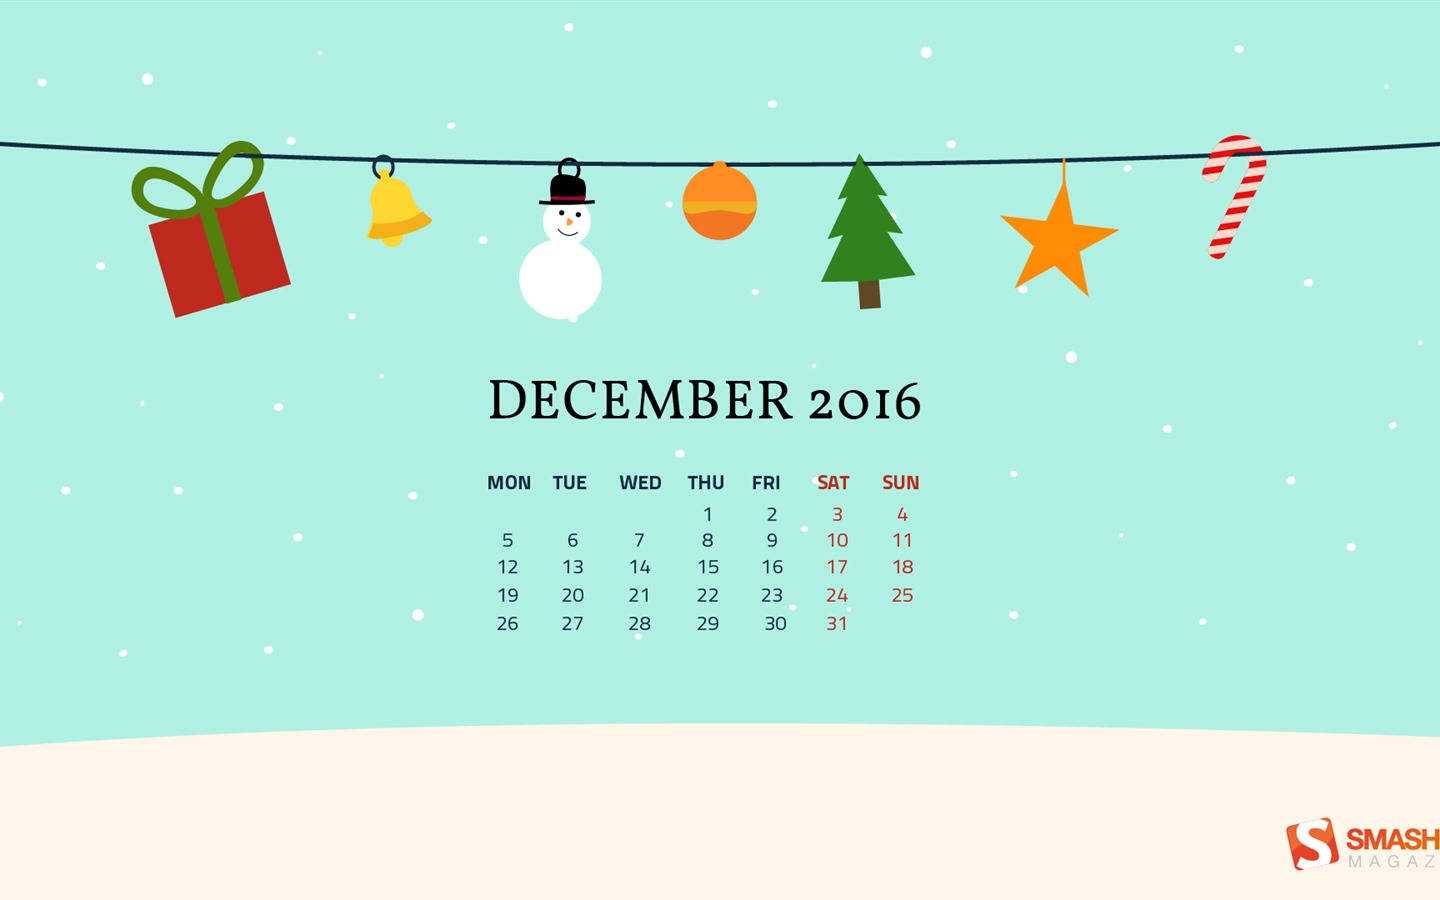 December 2016 Christmas theme calendar wallpaper (1) #14 - 1440x900